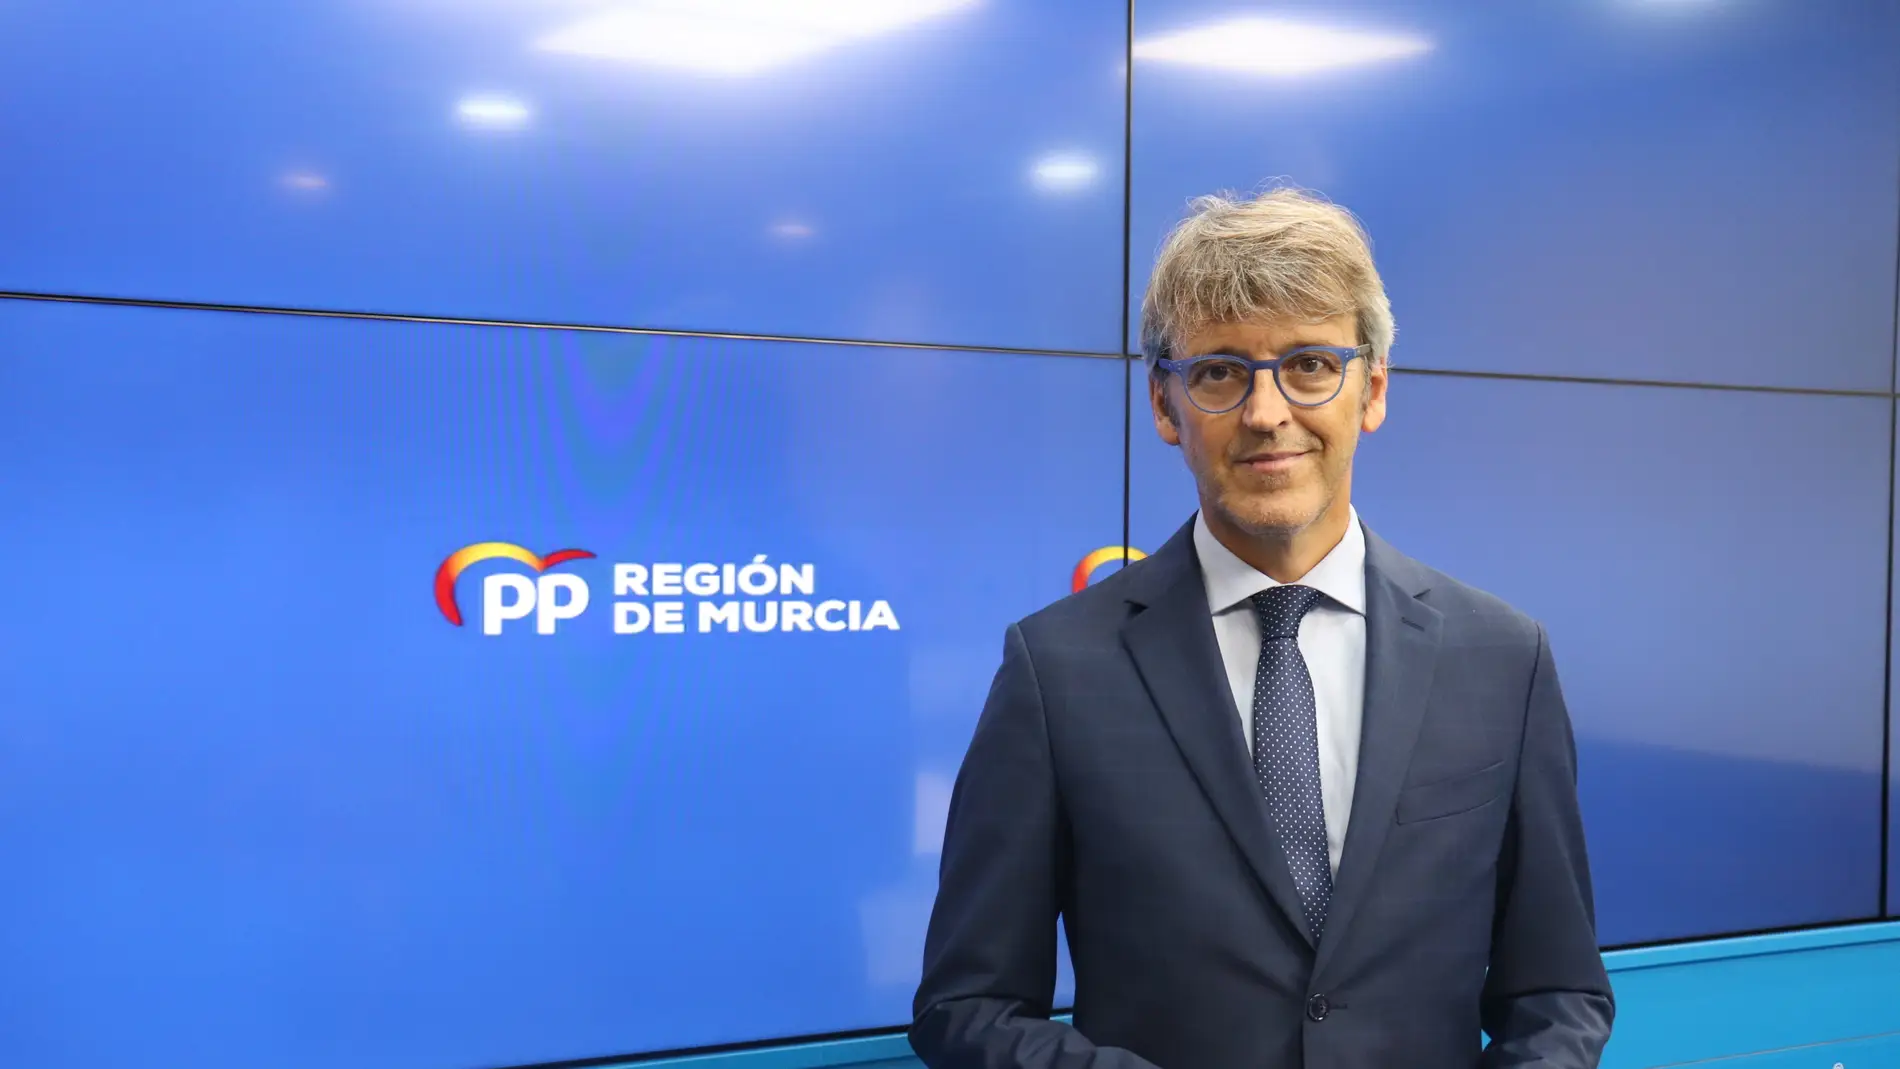 El consejero de Hacienda, Luis Alberto Marín, encabeza la lista del PP por la Región de Murcia al Congreso